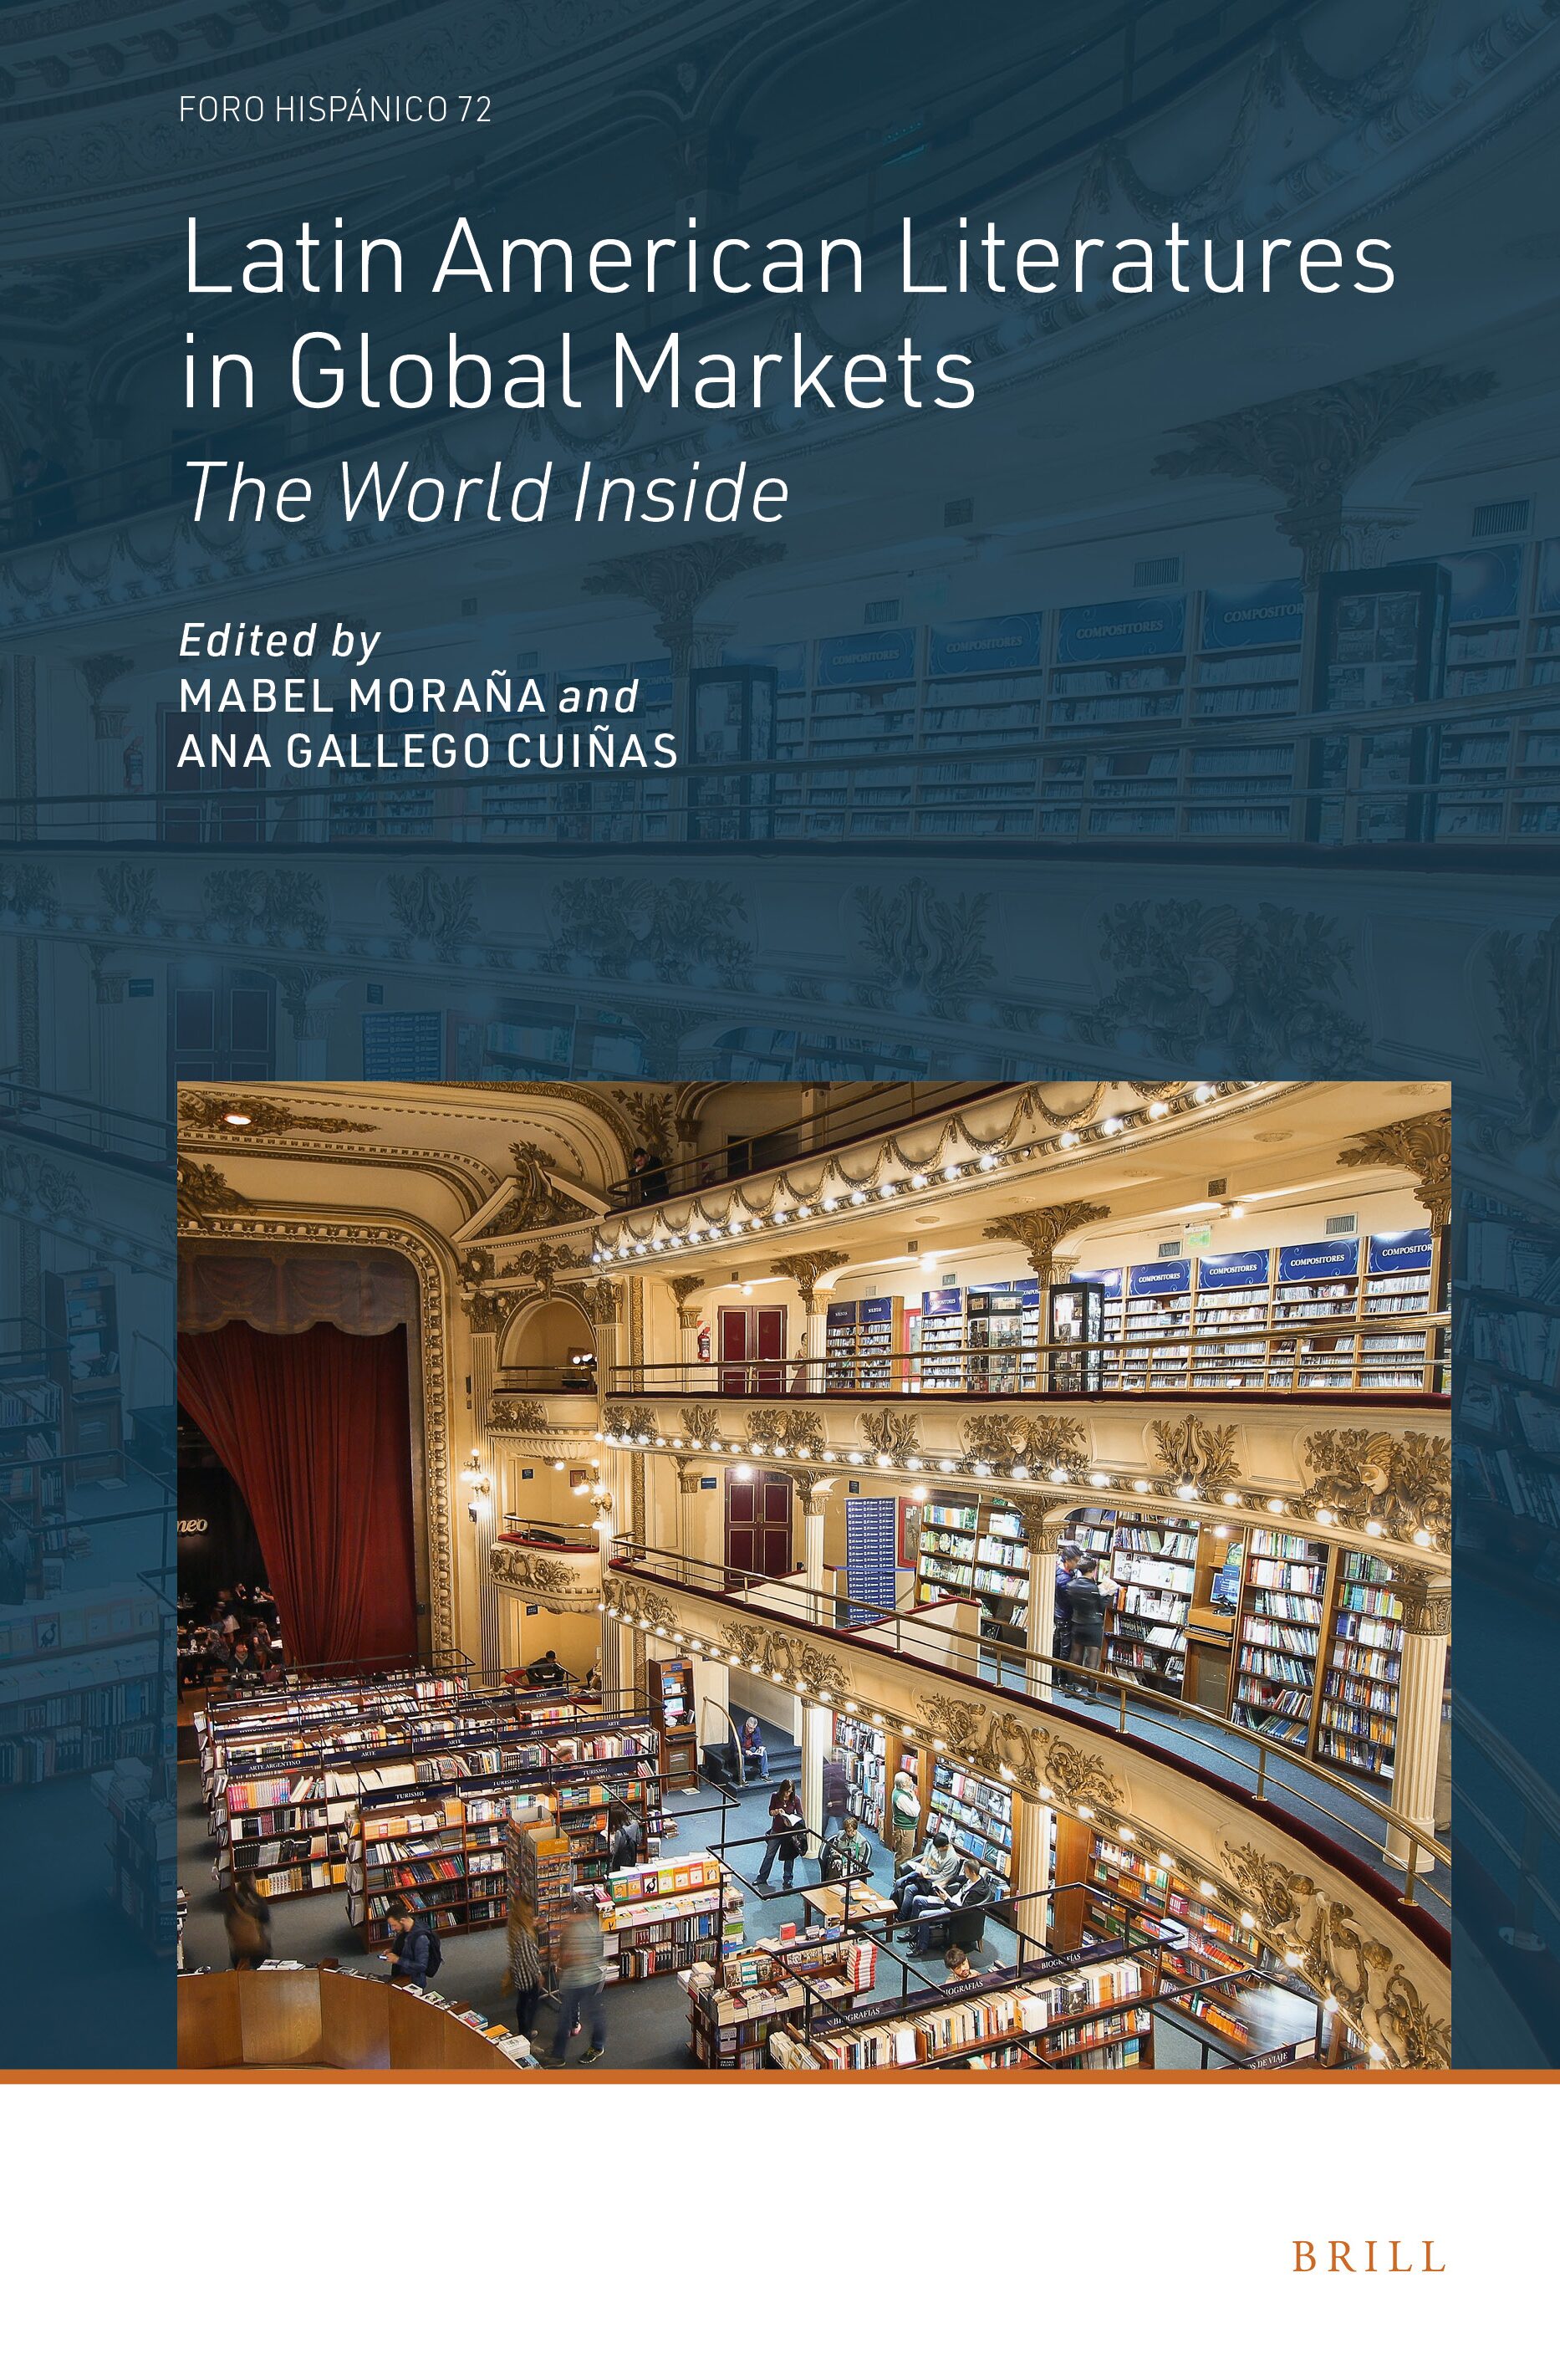 Imagen de portada del libro Latin American Literatures in Global Markets